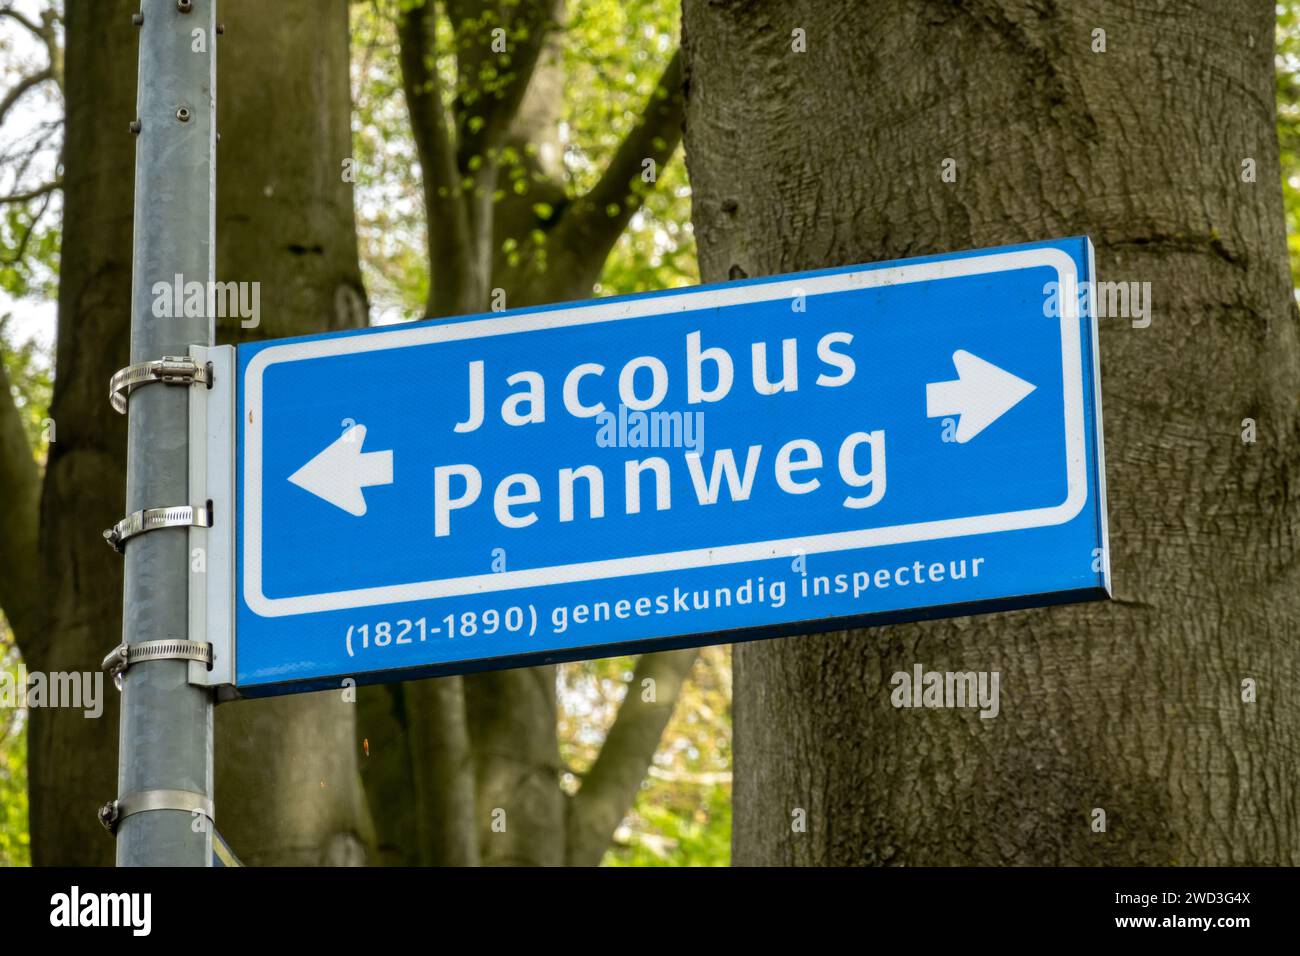 Panneau bleu du nom de rue de Jacobus Pennweg, nommé d'après l'inspecteur sanitaire, à Hilversum, pays-Bas Banque D'Images